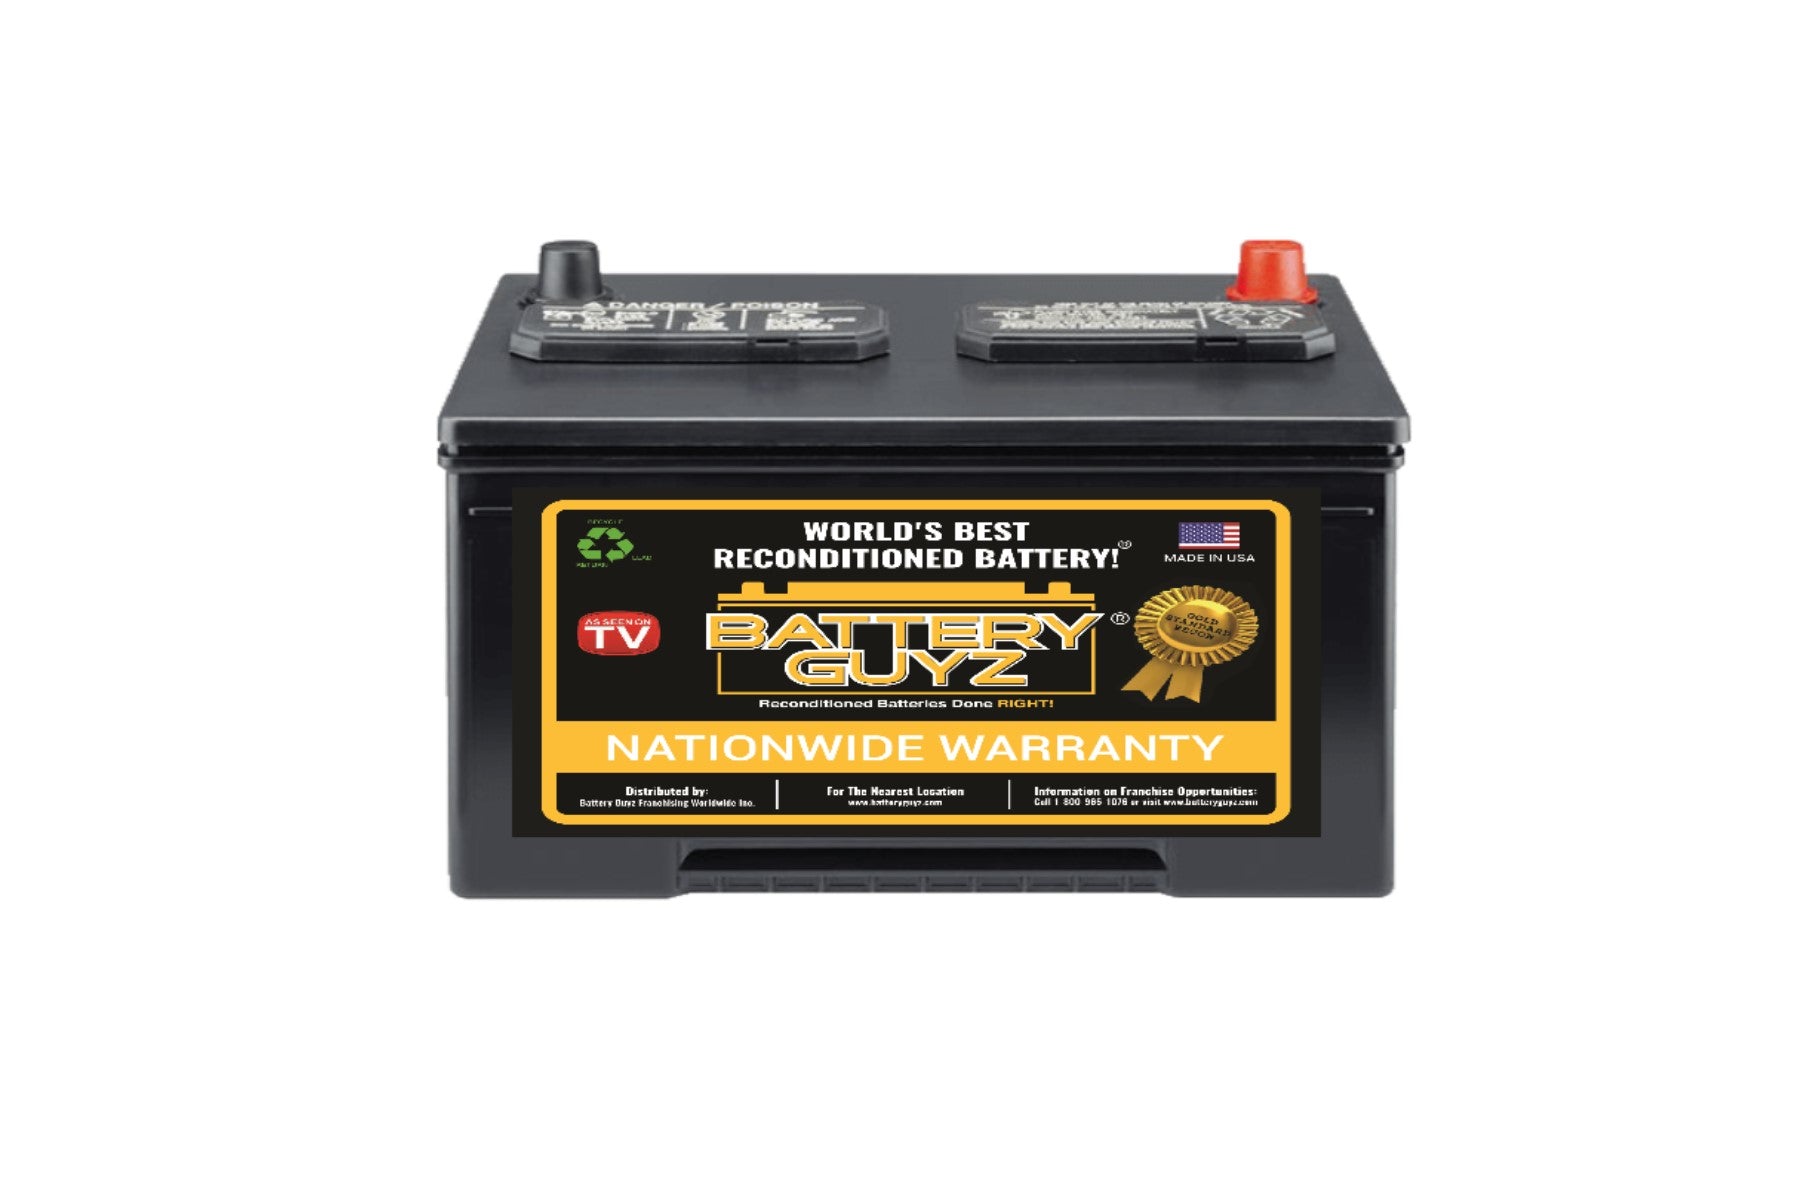 Qualité & Prix Autobatterie CP04, 12 V